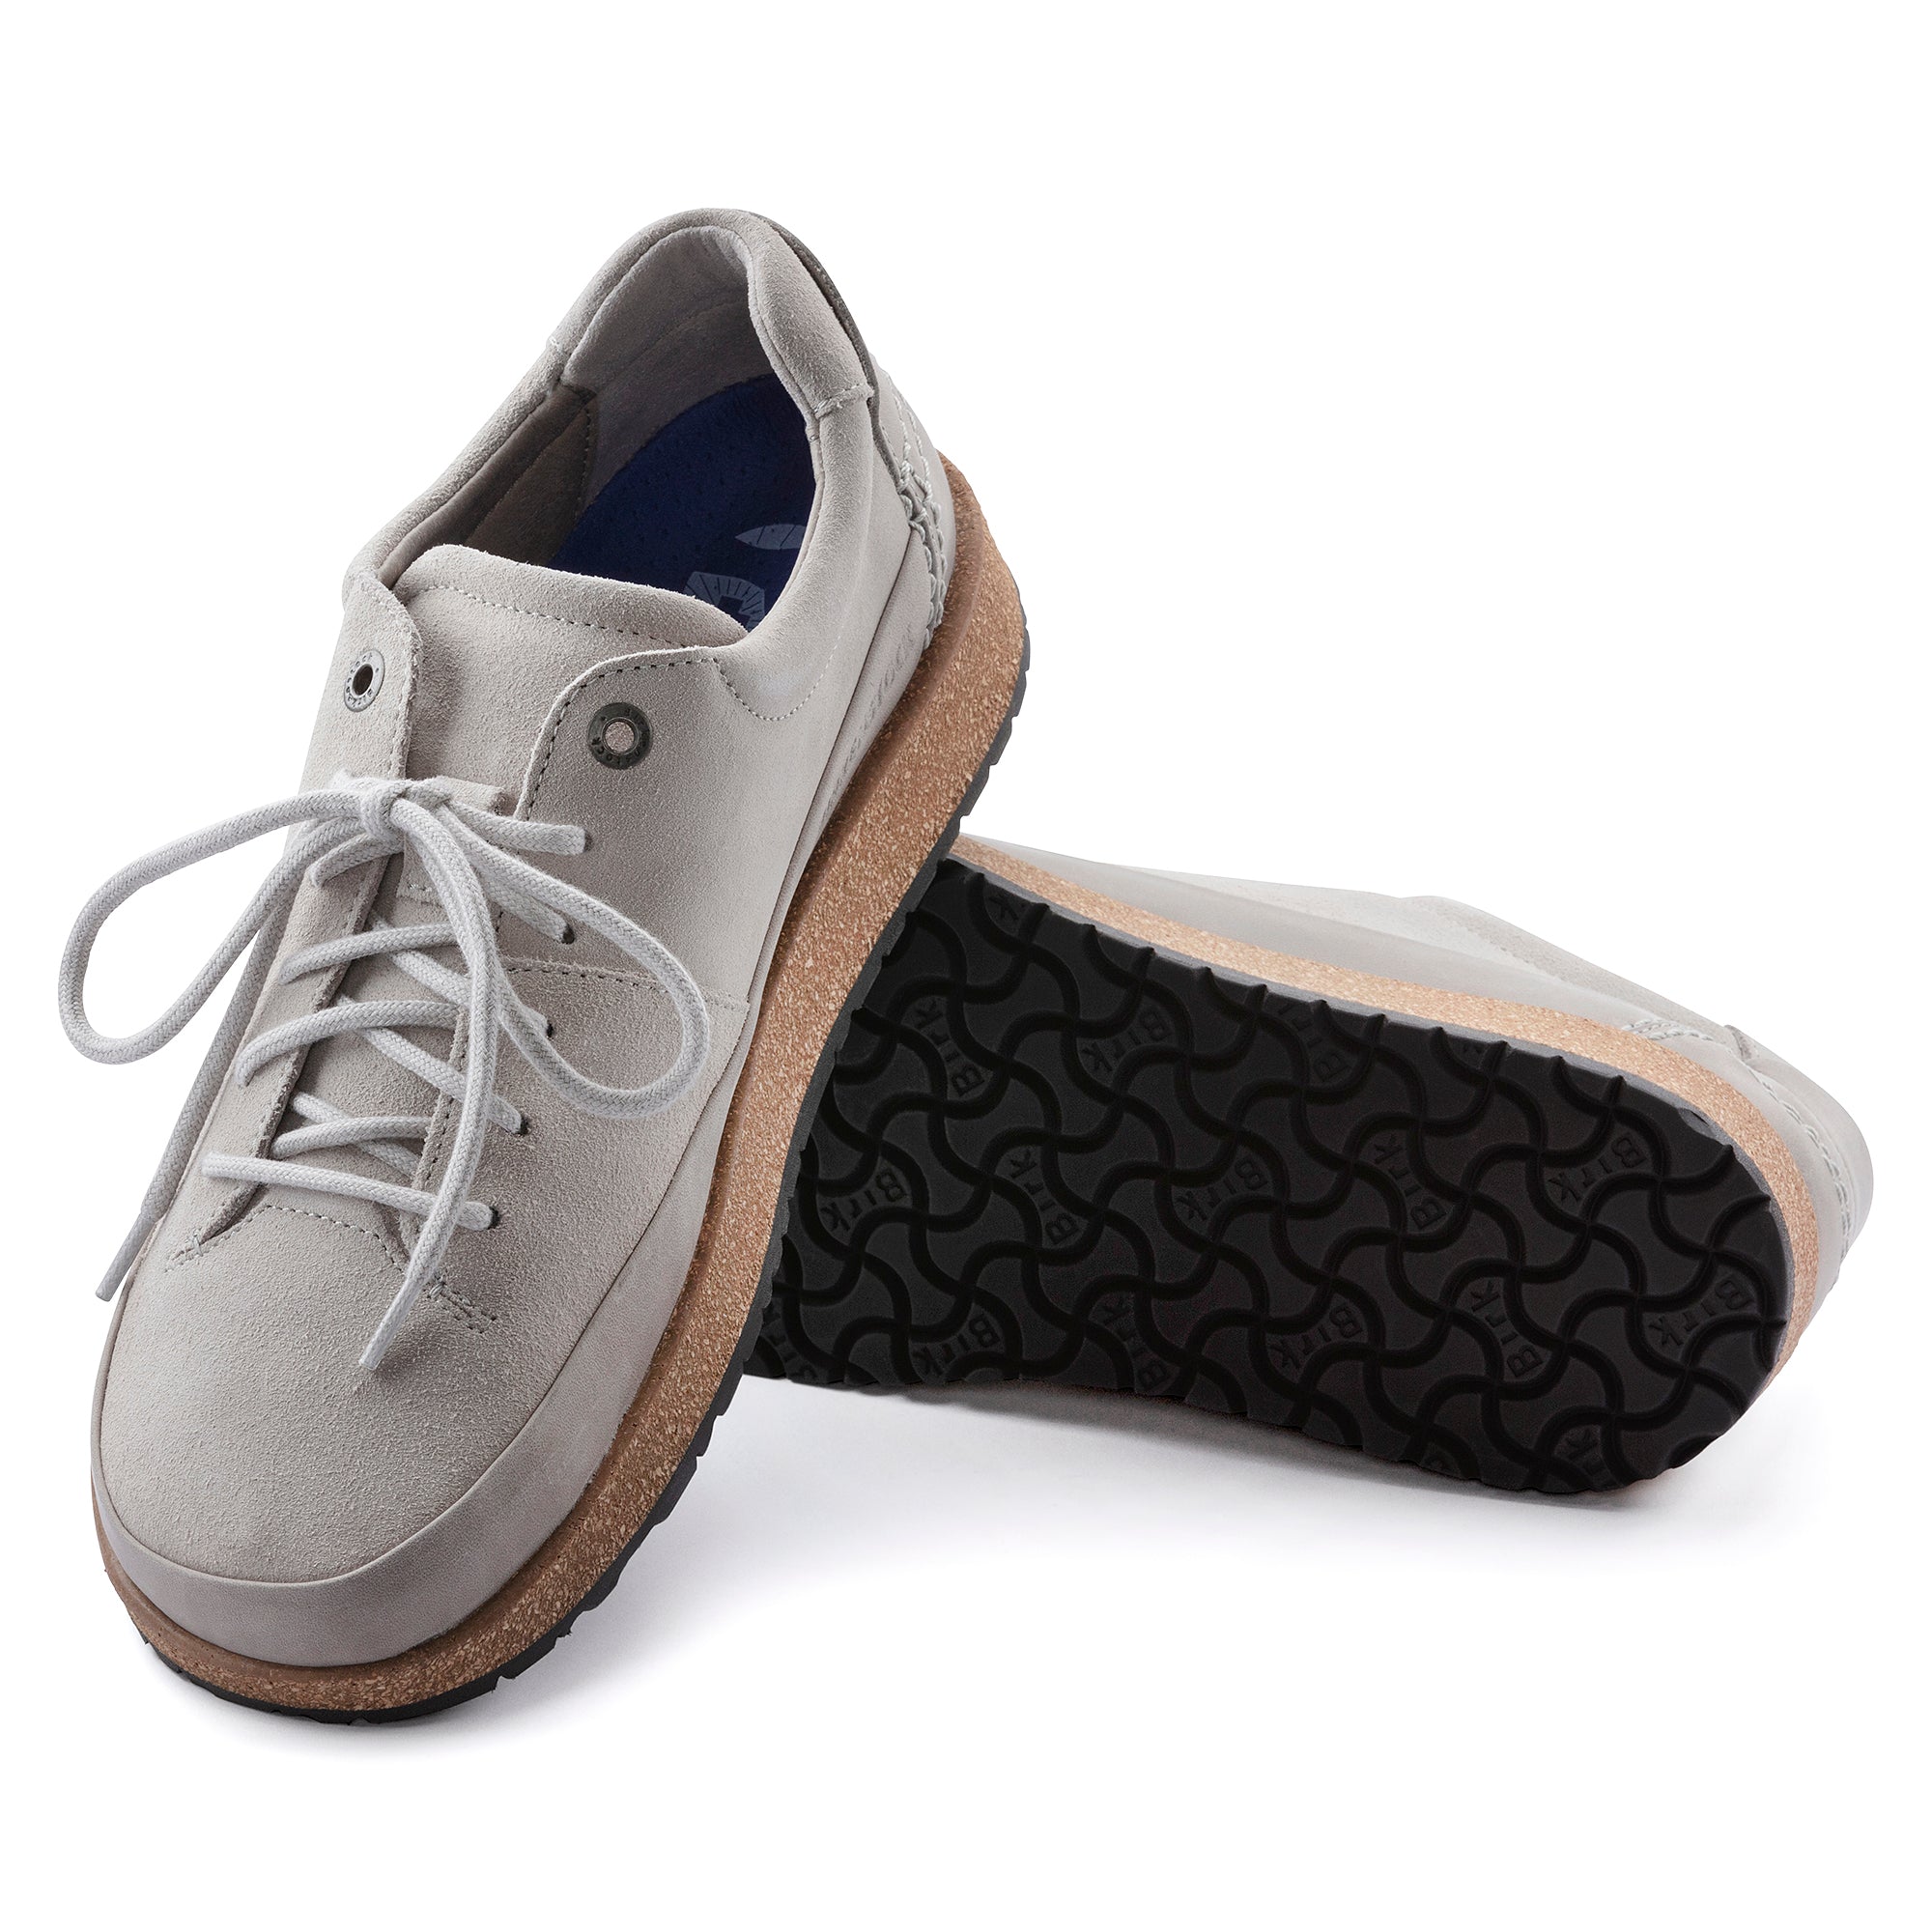 Birkenstock Honnef Low Suede Leather Sneaker Women's